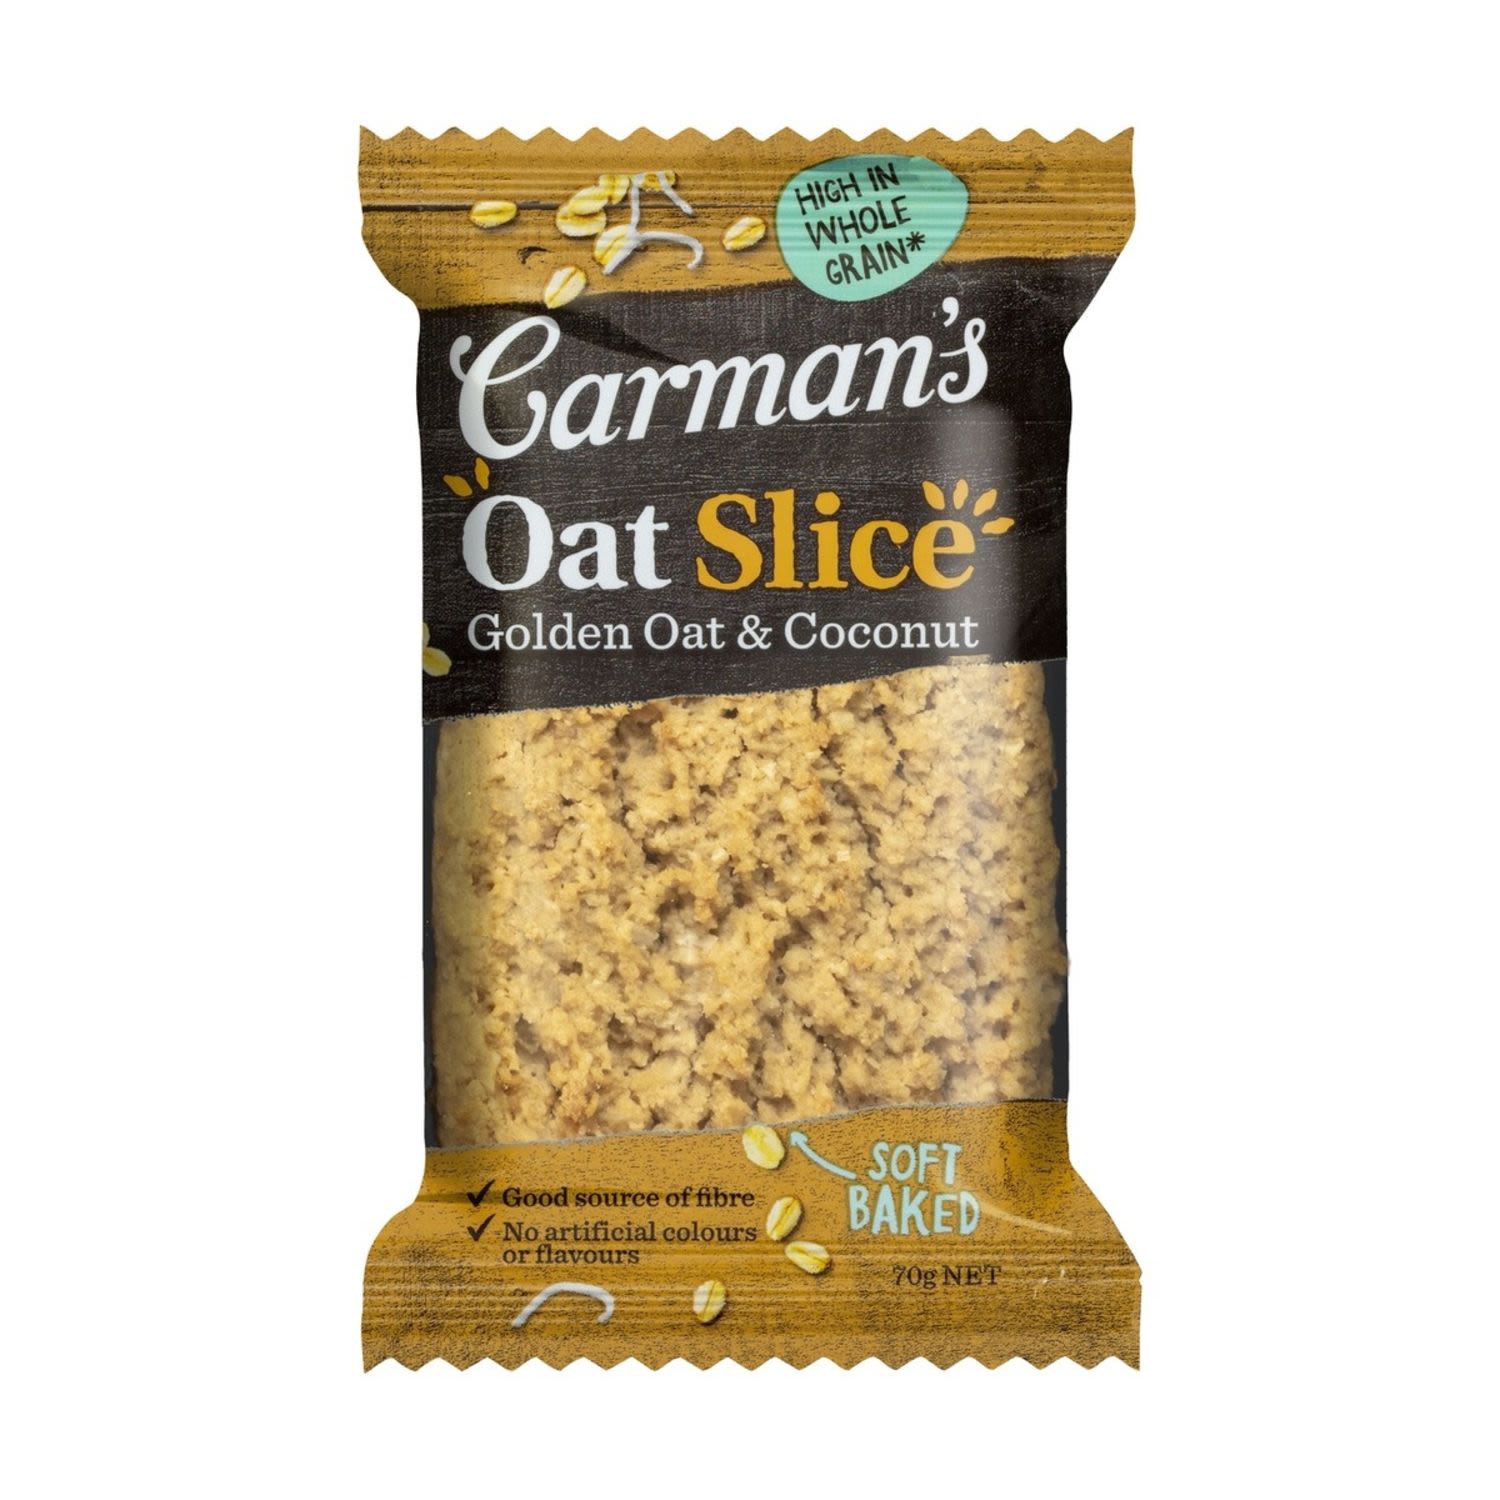 Carman's Oat Slice Golden Oat & Coconut, 70 Gram